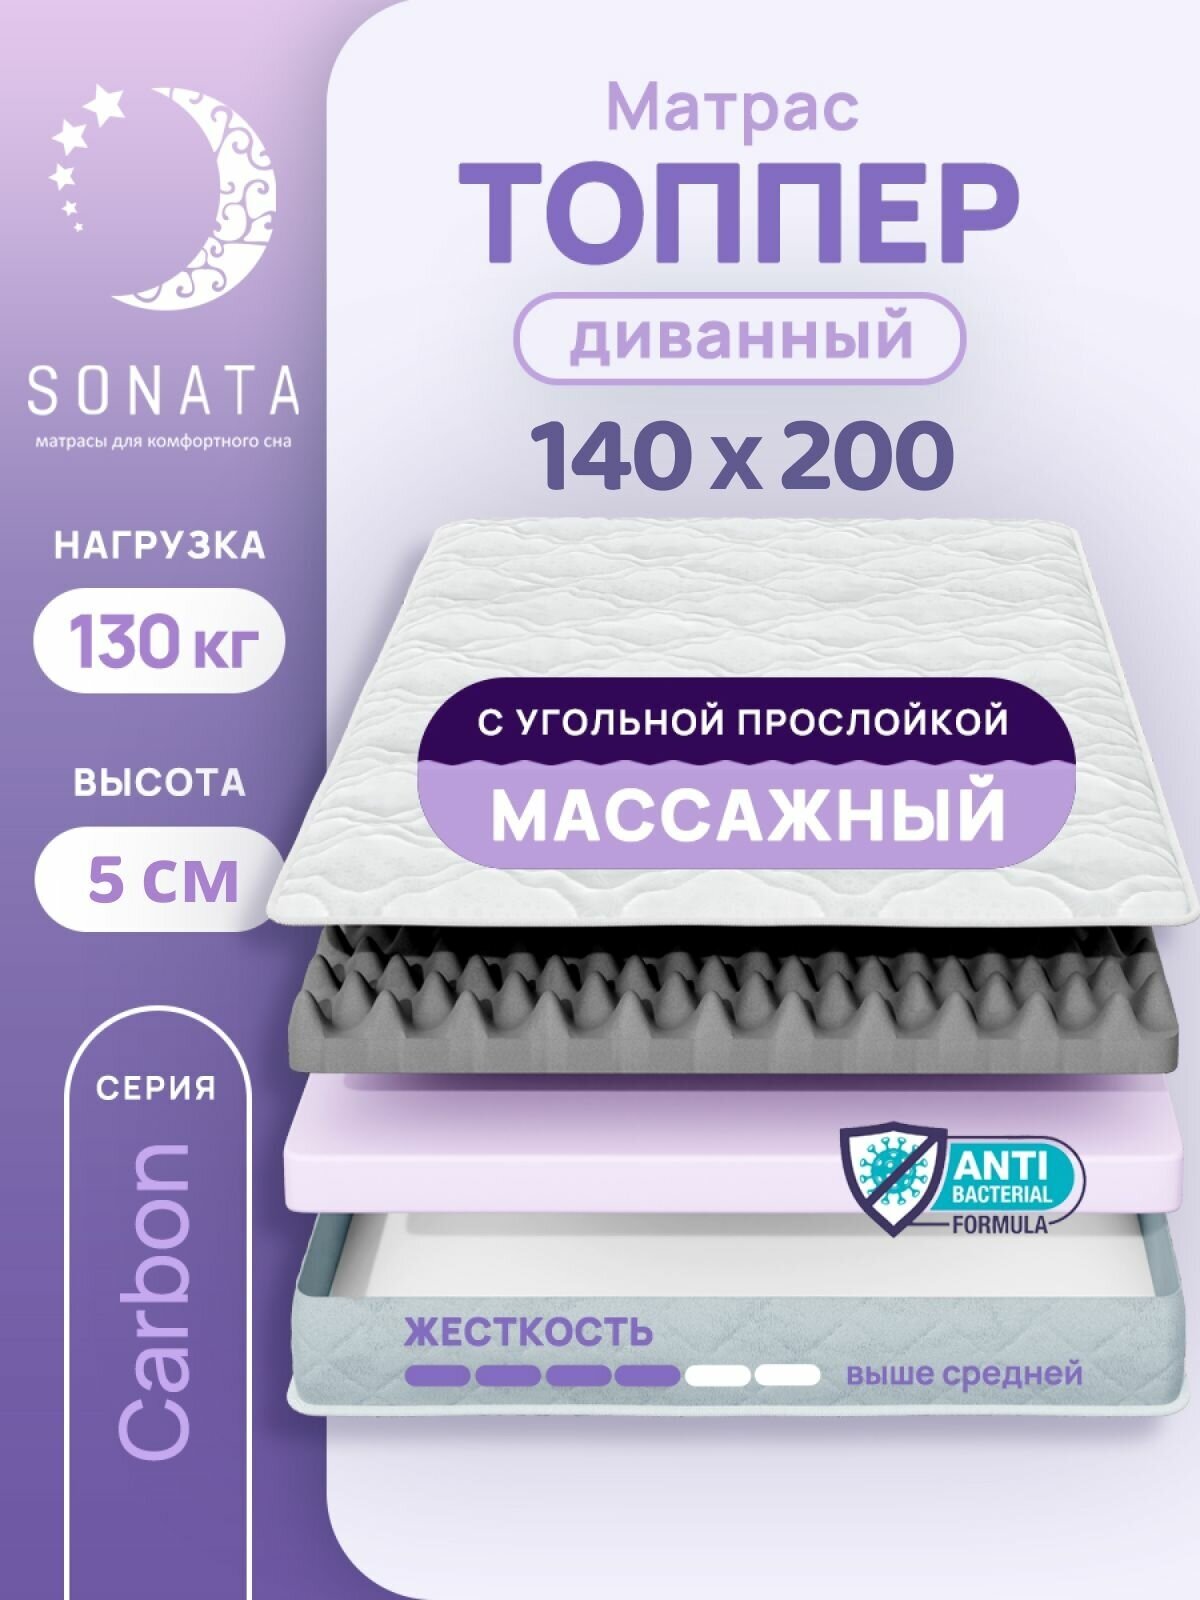 Топпер матрас 140х200 см SONATA, ортопедический, беспружинный, двуспальный, тонкий матрац для дивана, кровати, высота 5 см с массажным эффектом